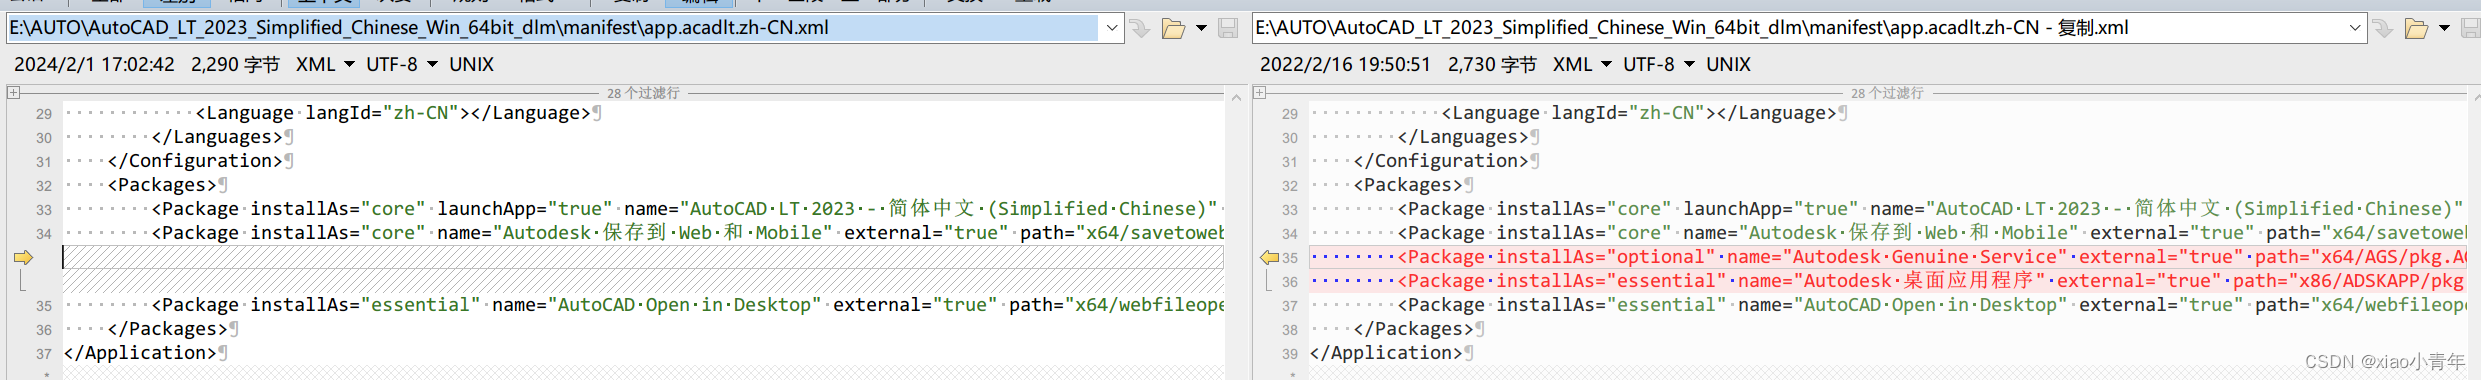 【AutoCAD2023】删除验证组件+桌面应用程序+登陆组件方法